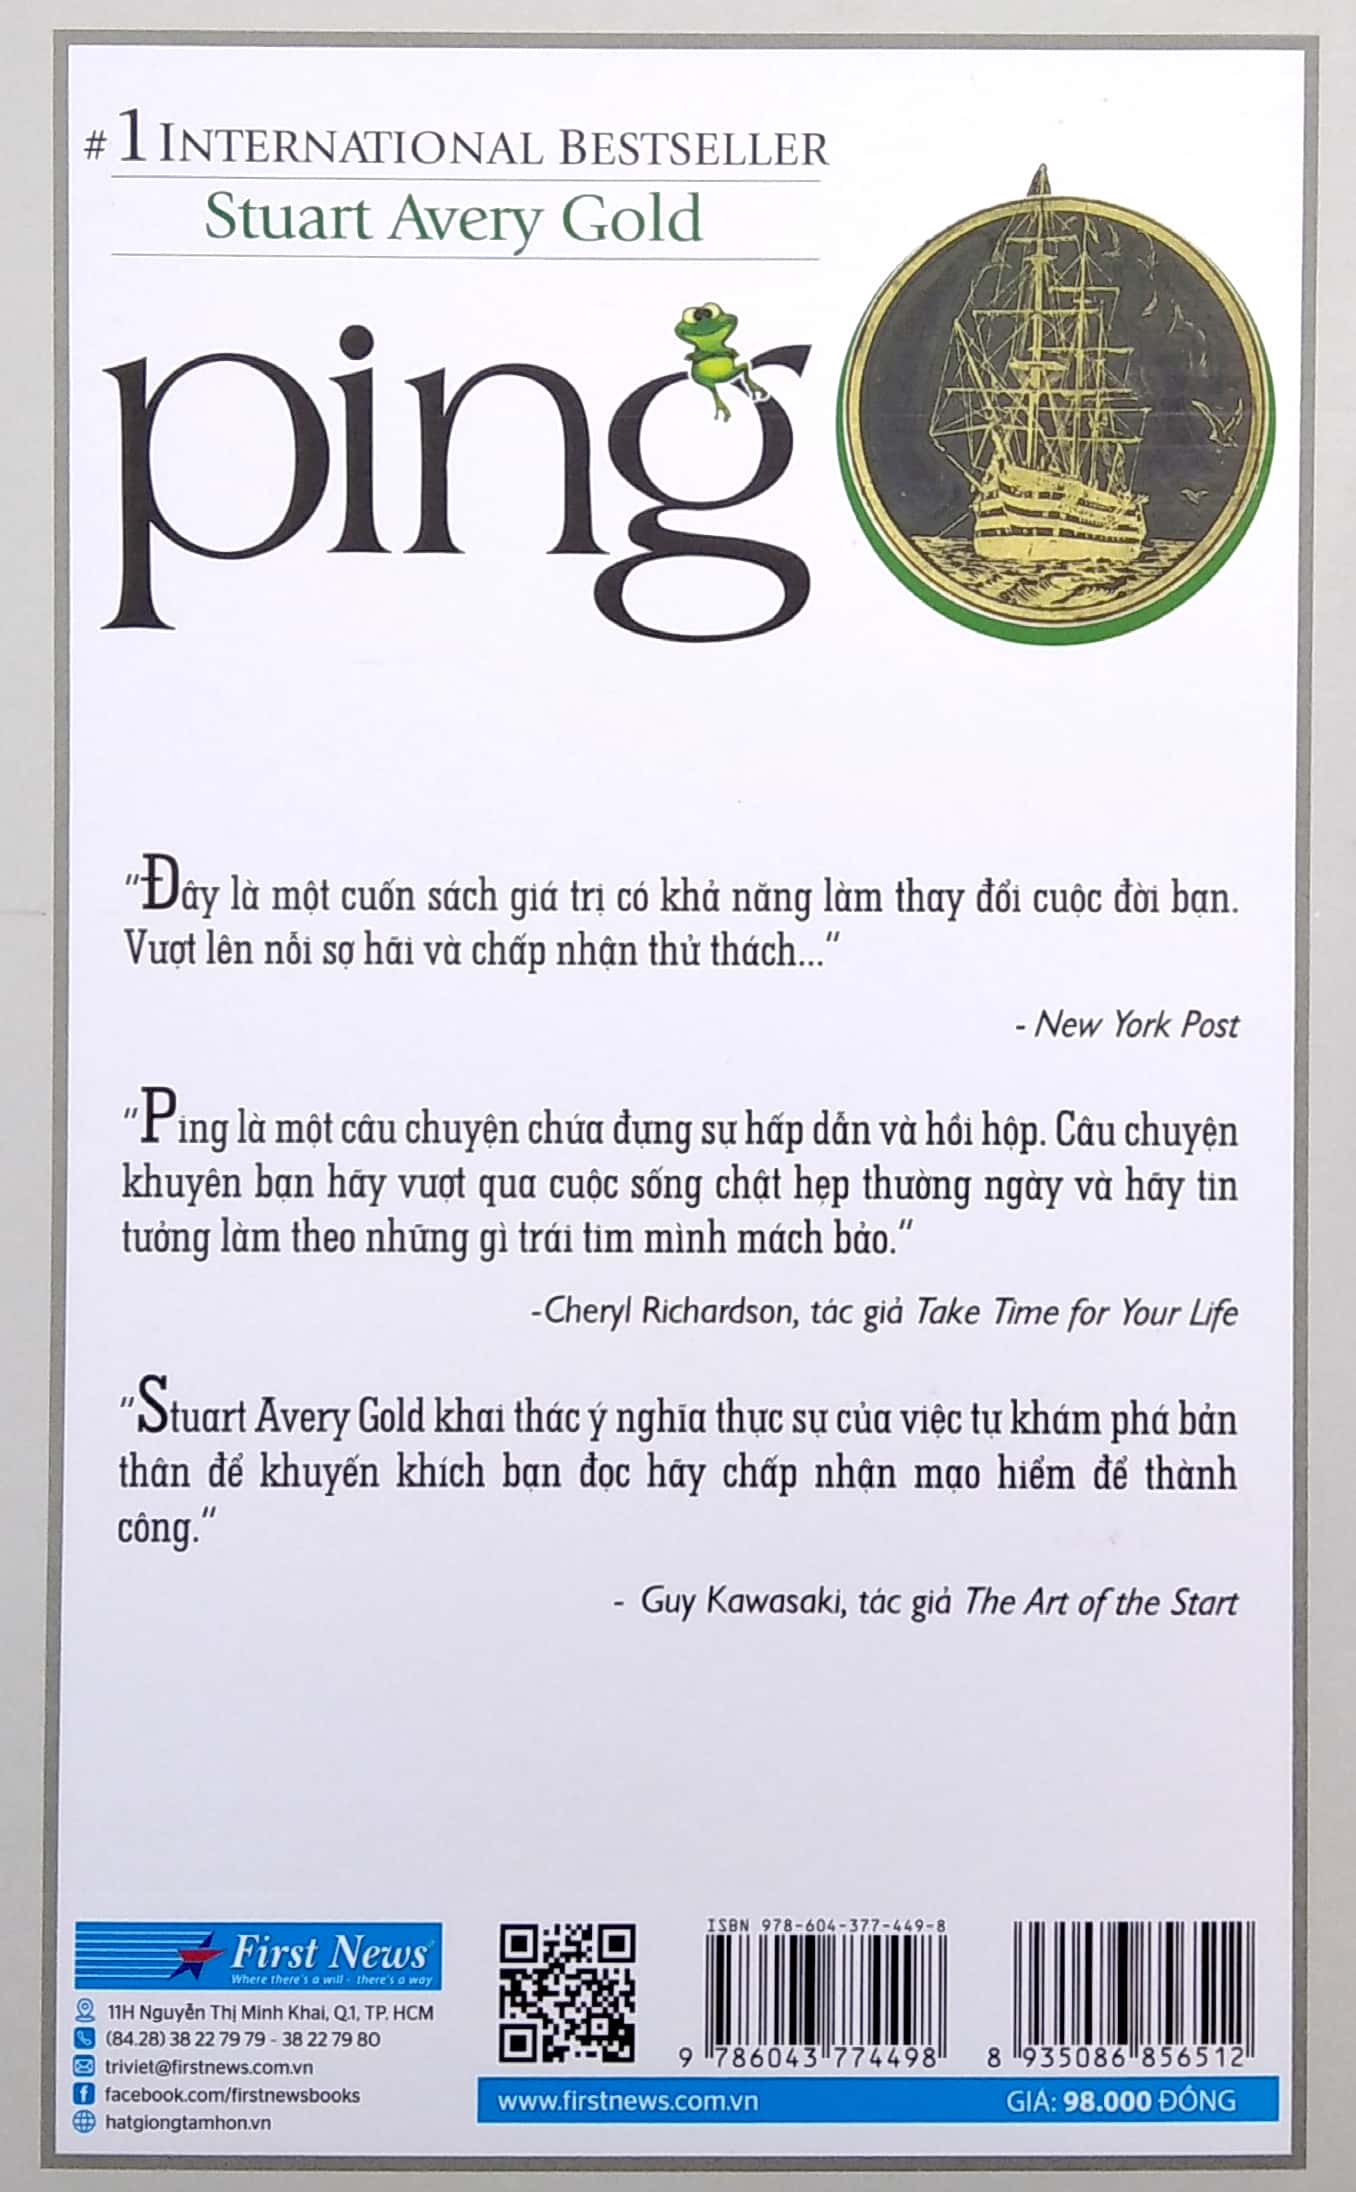 Ping - Vượt Ao Tù Ra Biển Lớn PDF